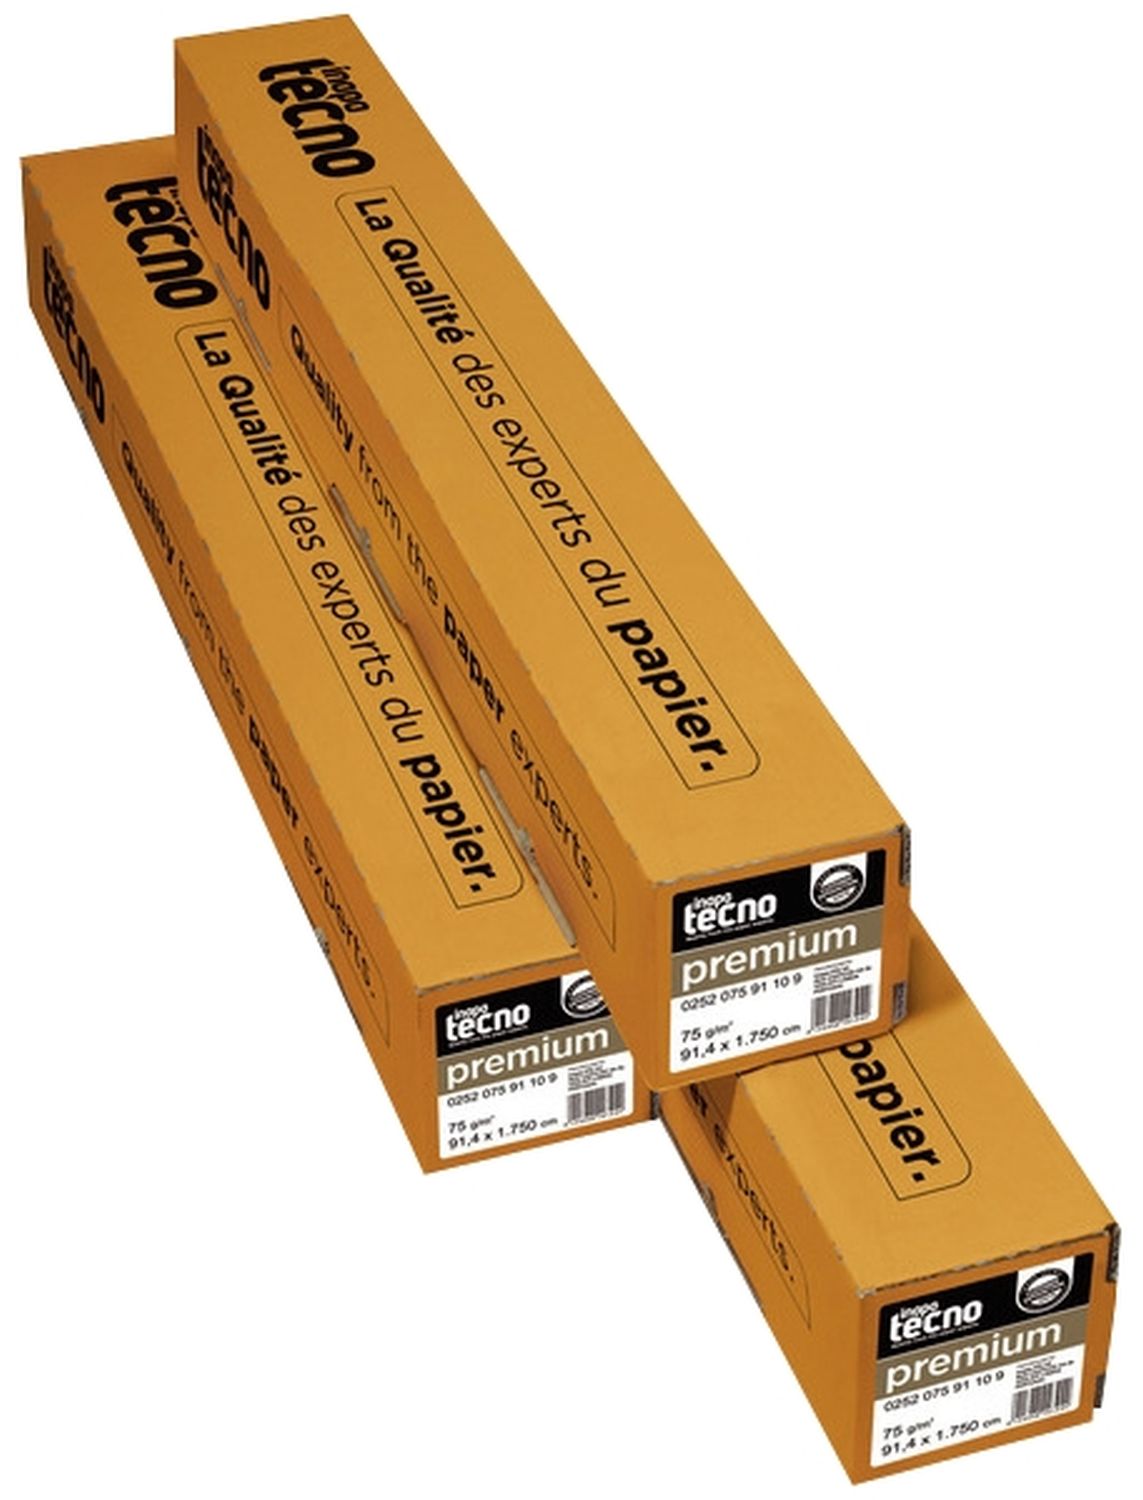 Plotterpapier tecno premium 41000000165 für Großformatdruck, 914 mm x 175 m (A00), 75 g/qm, Kern-Ø 7,50 cm, 1 Rolle